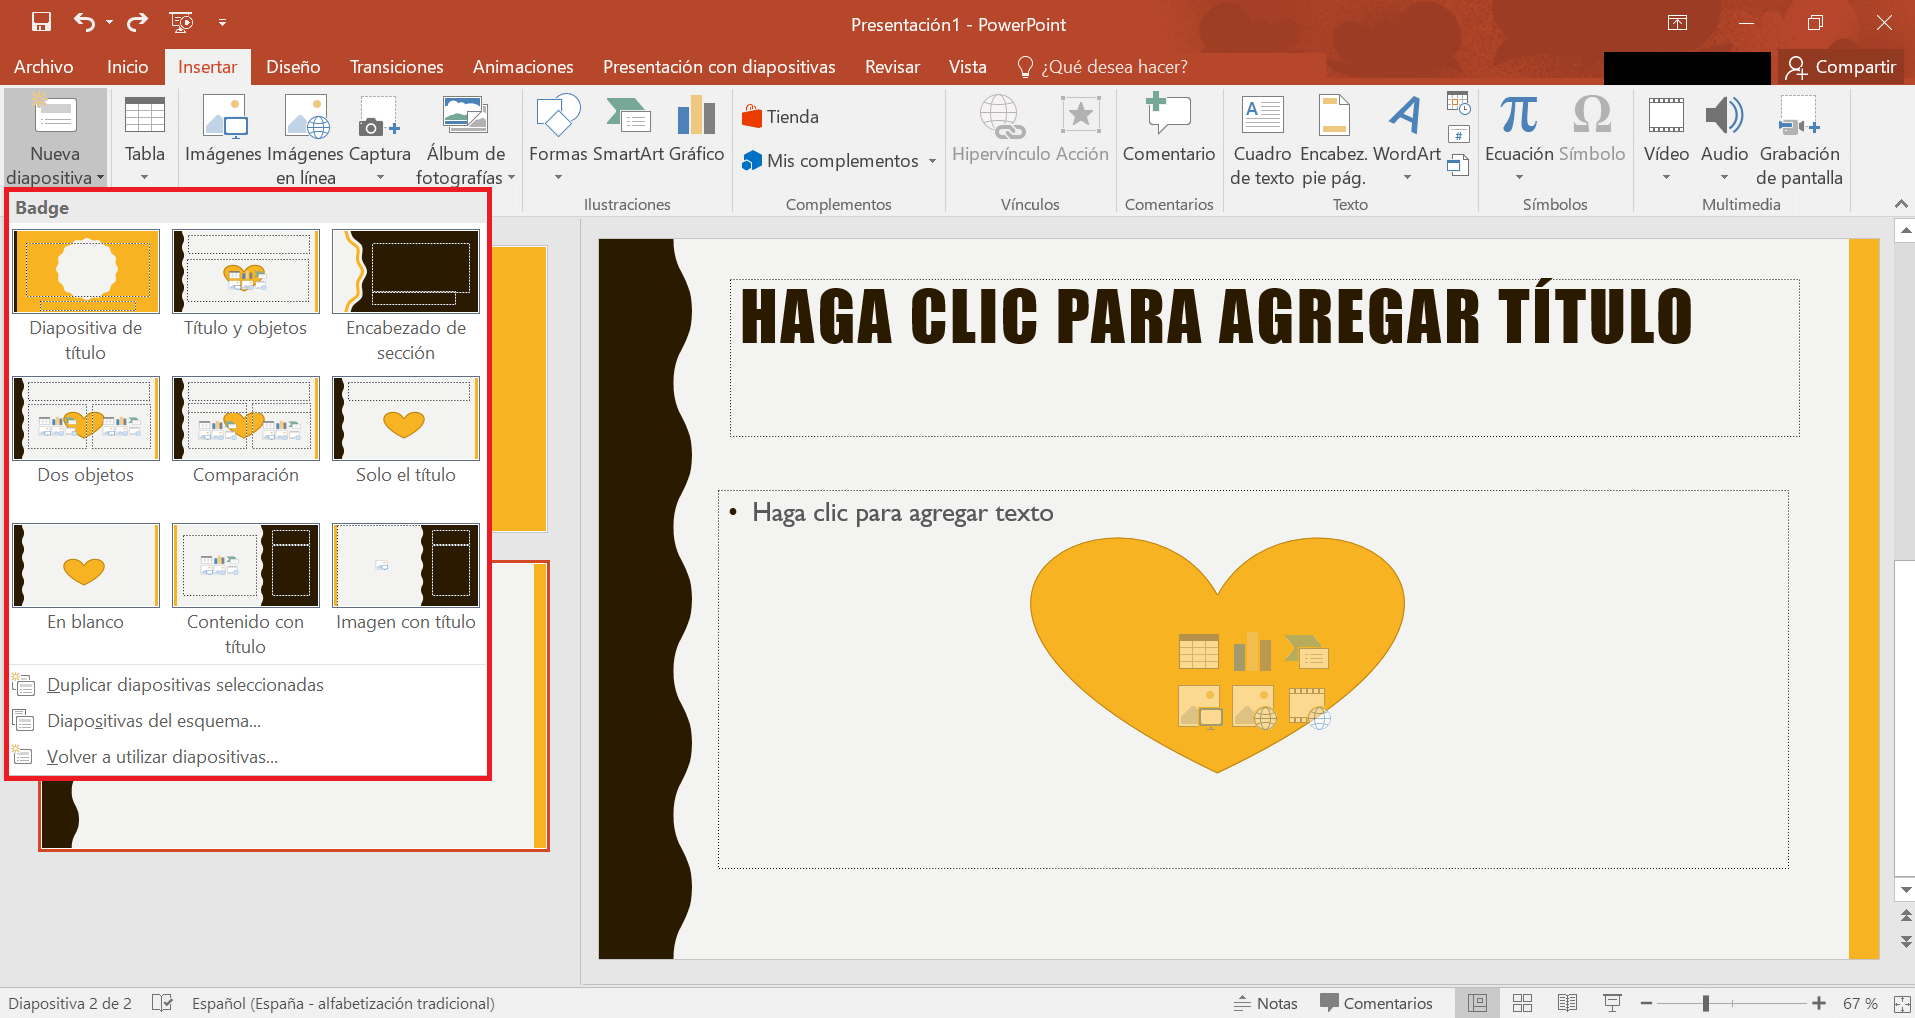 Insertar los diseños de las diapositivas mediante la pestaña “Insertar” en PowerPoint 2019